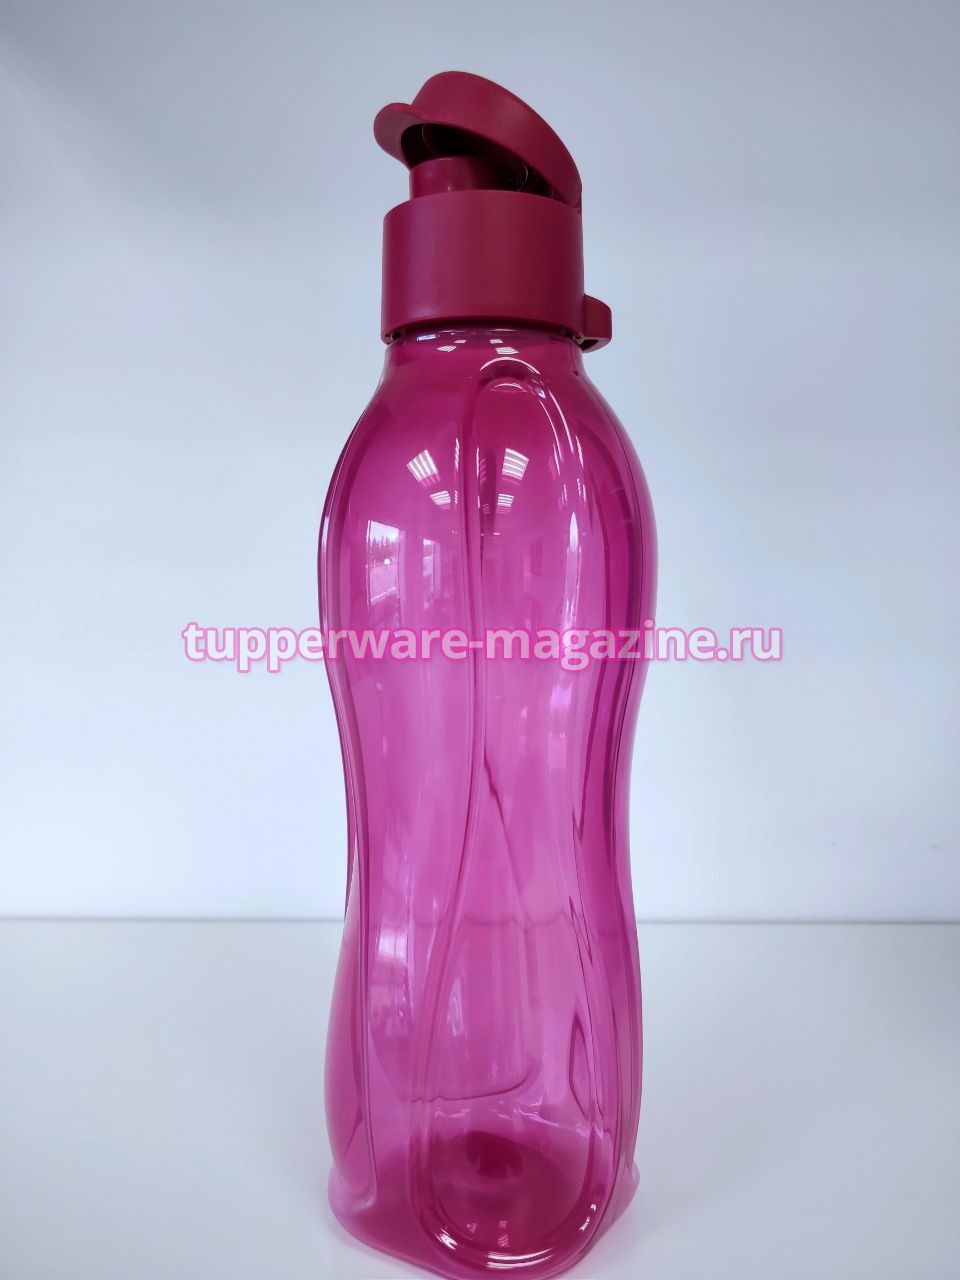 Эко-бутылка (500 мл) в бордовом цвете с клапаном